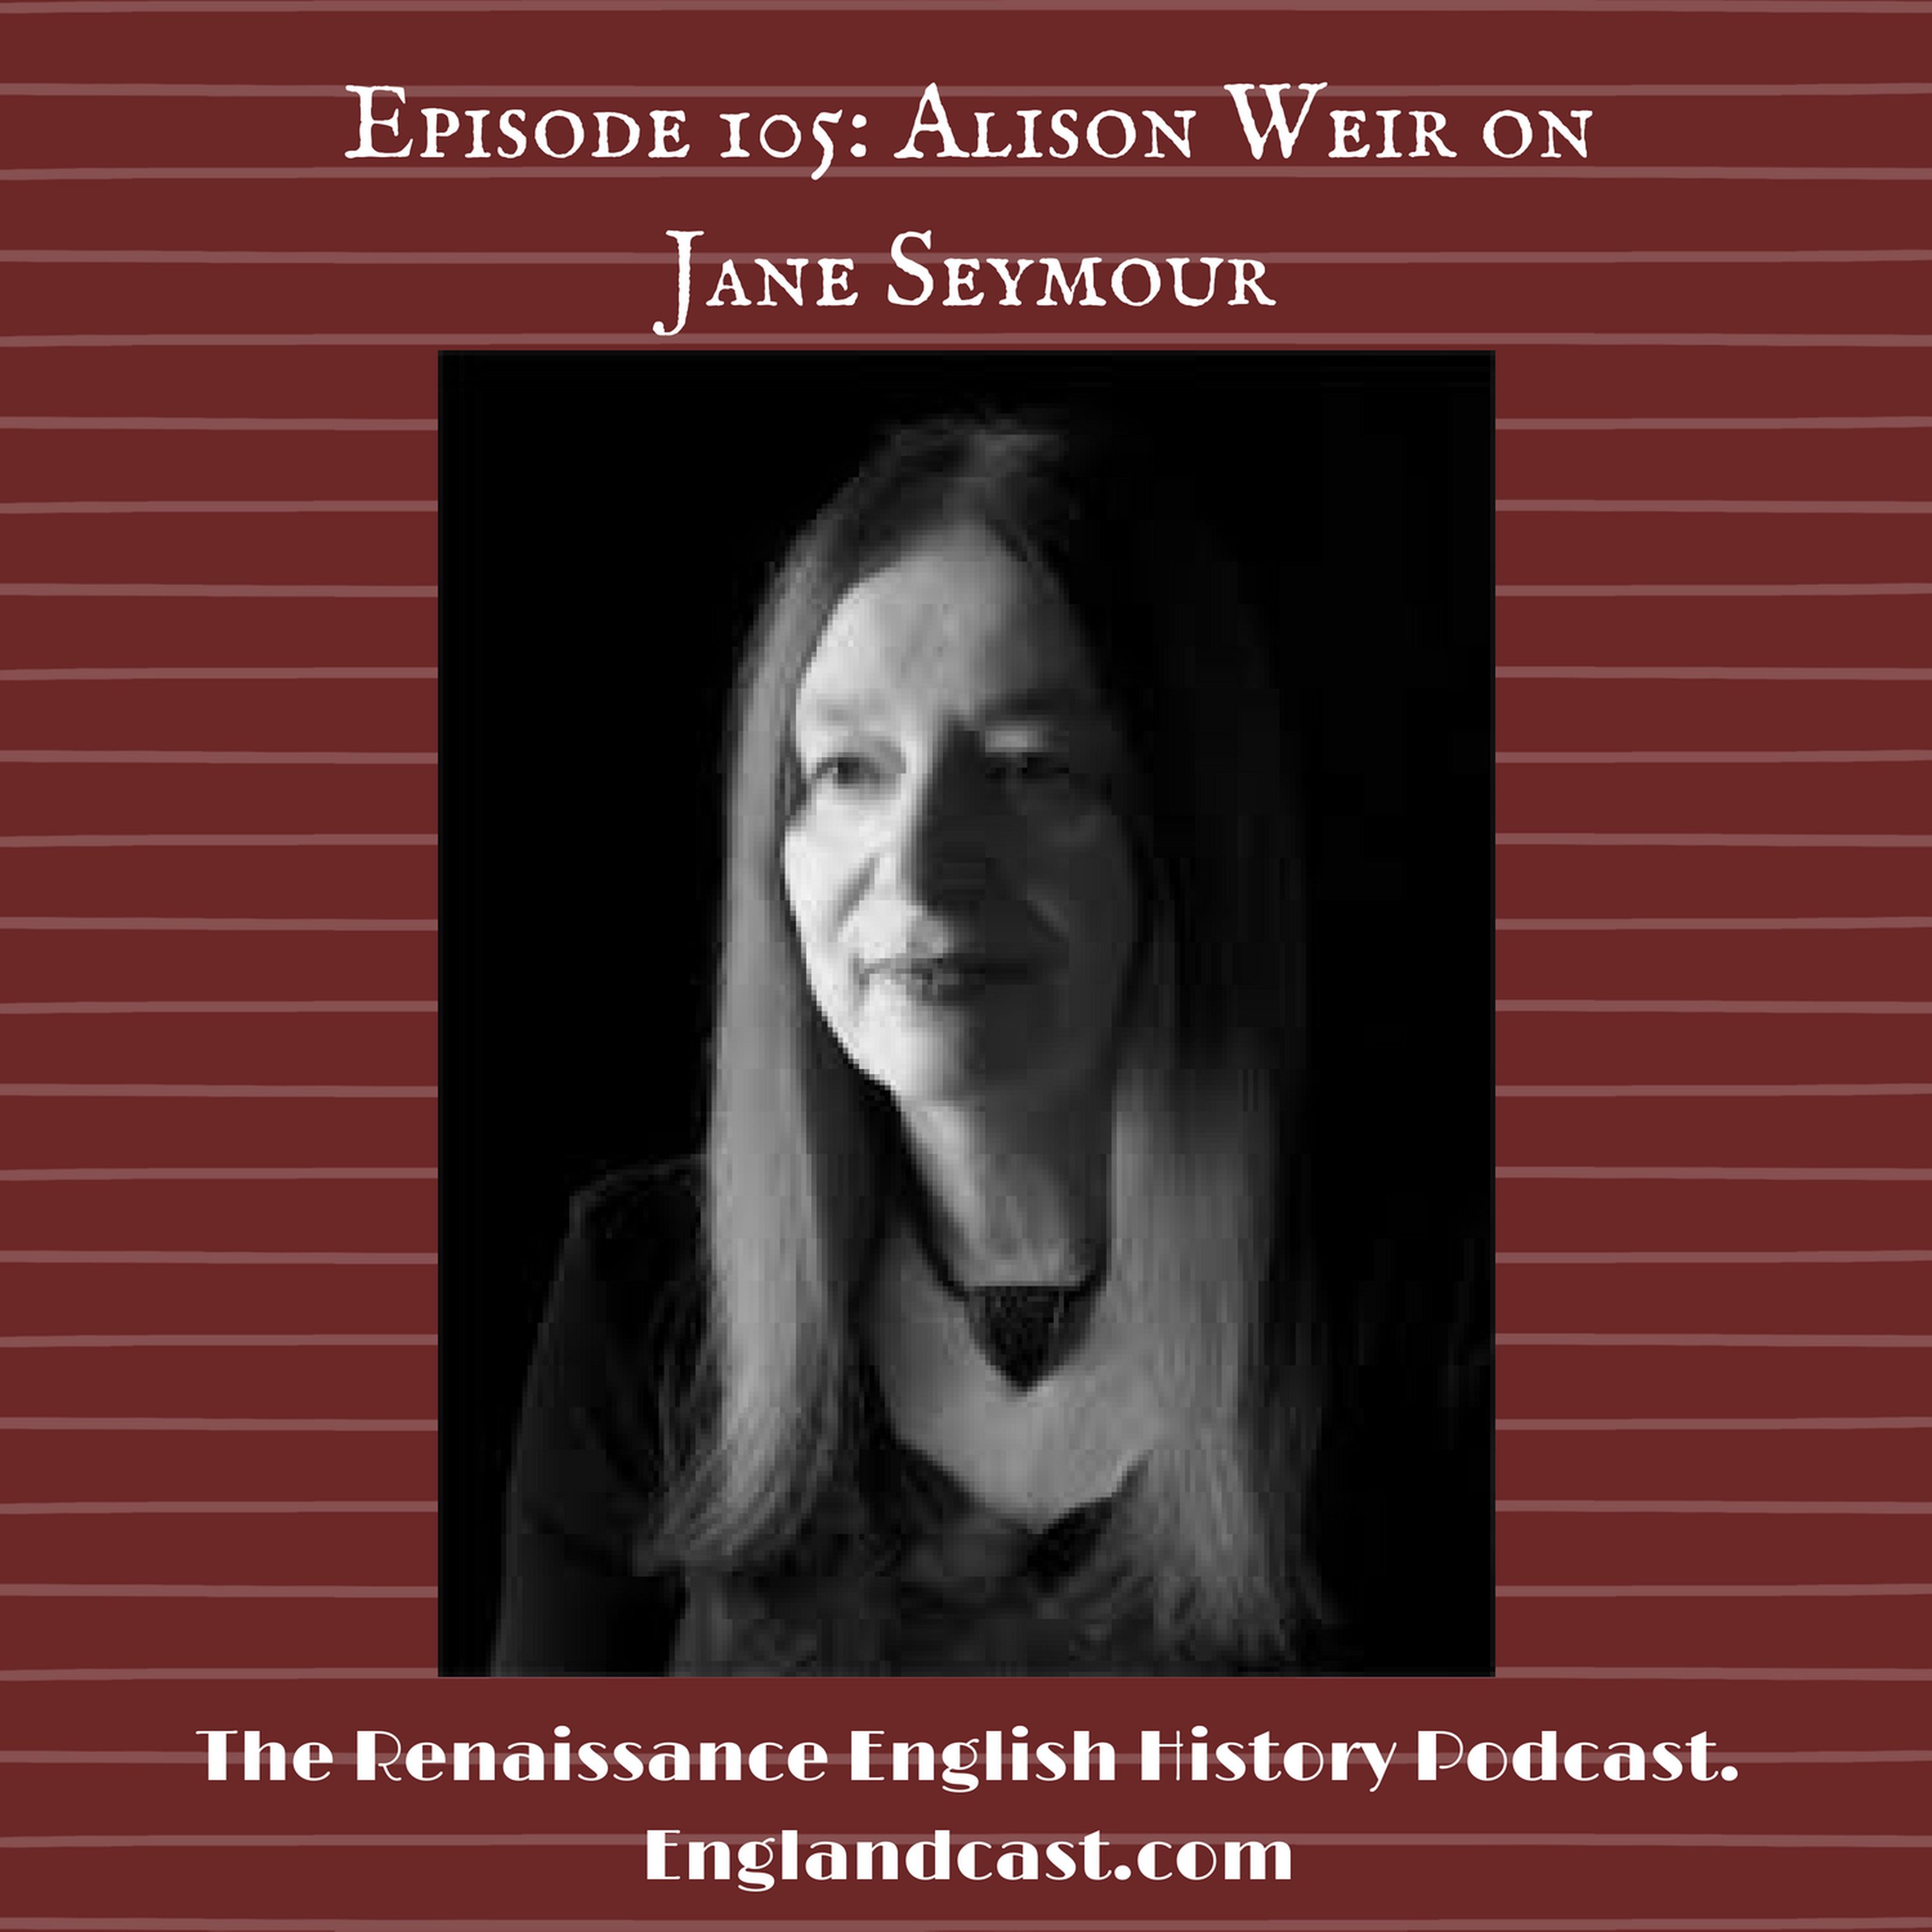 Episode 105 Historian Alison Weir on Jane Seymour